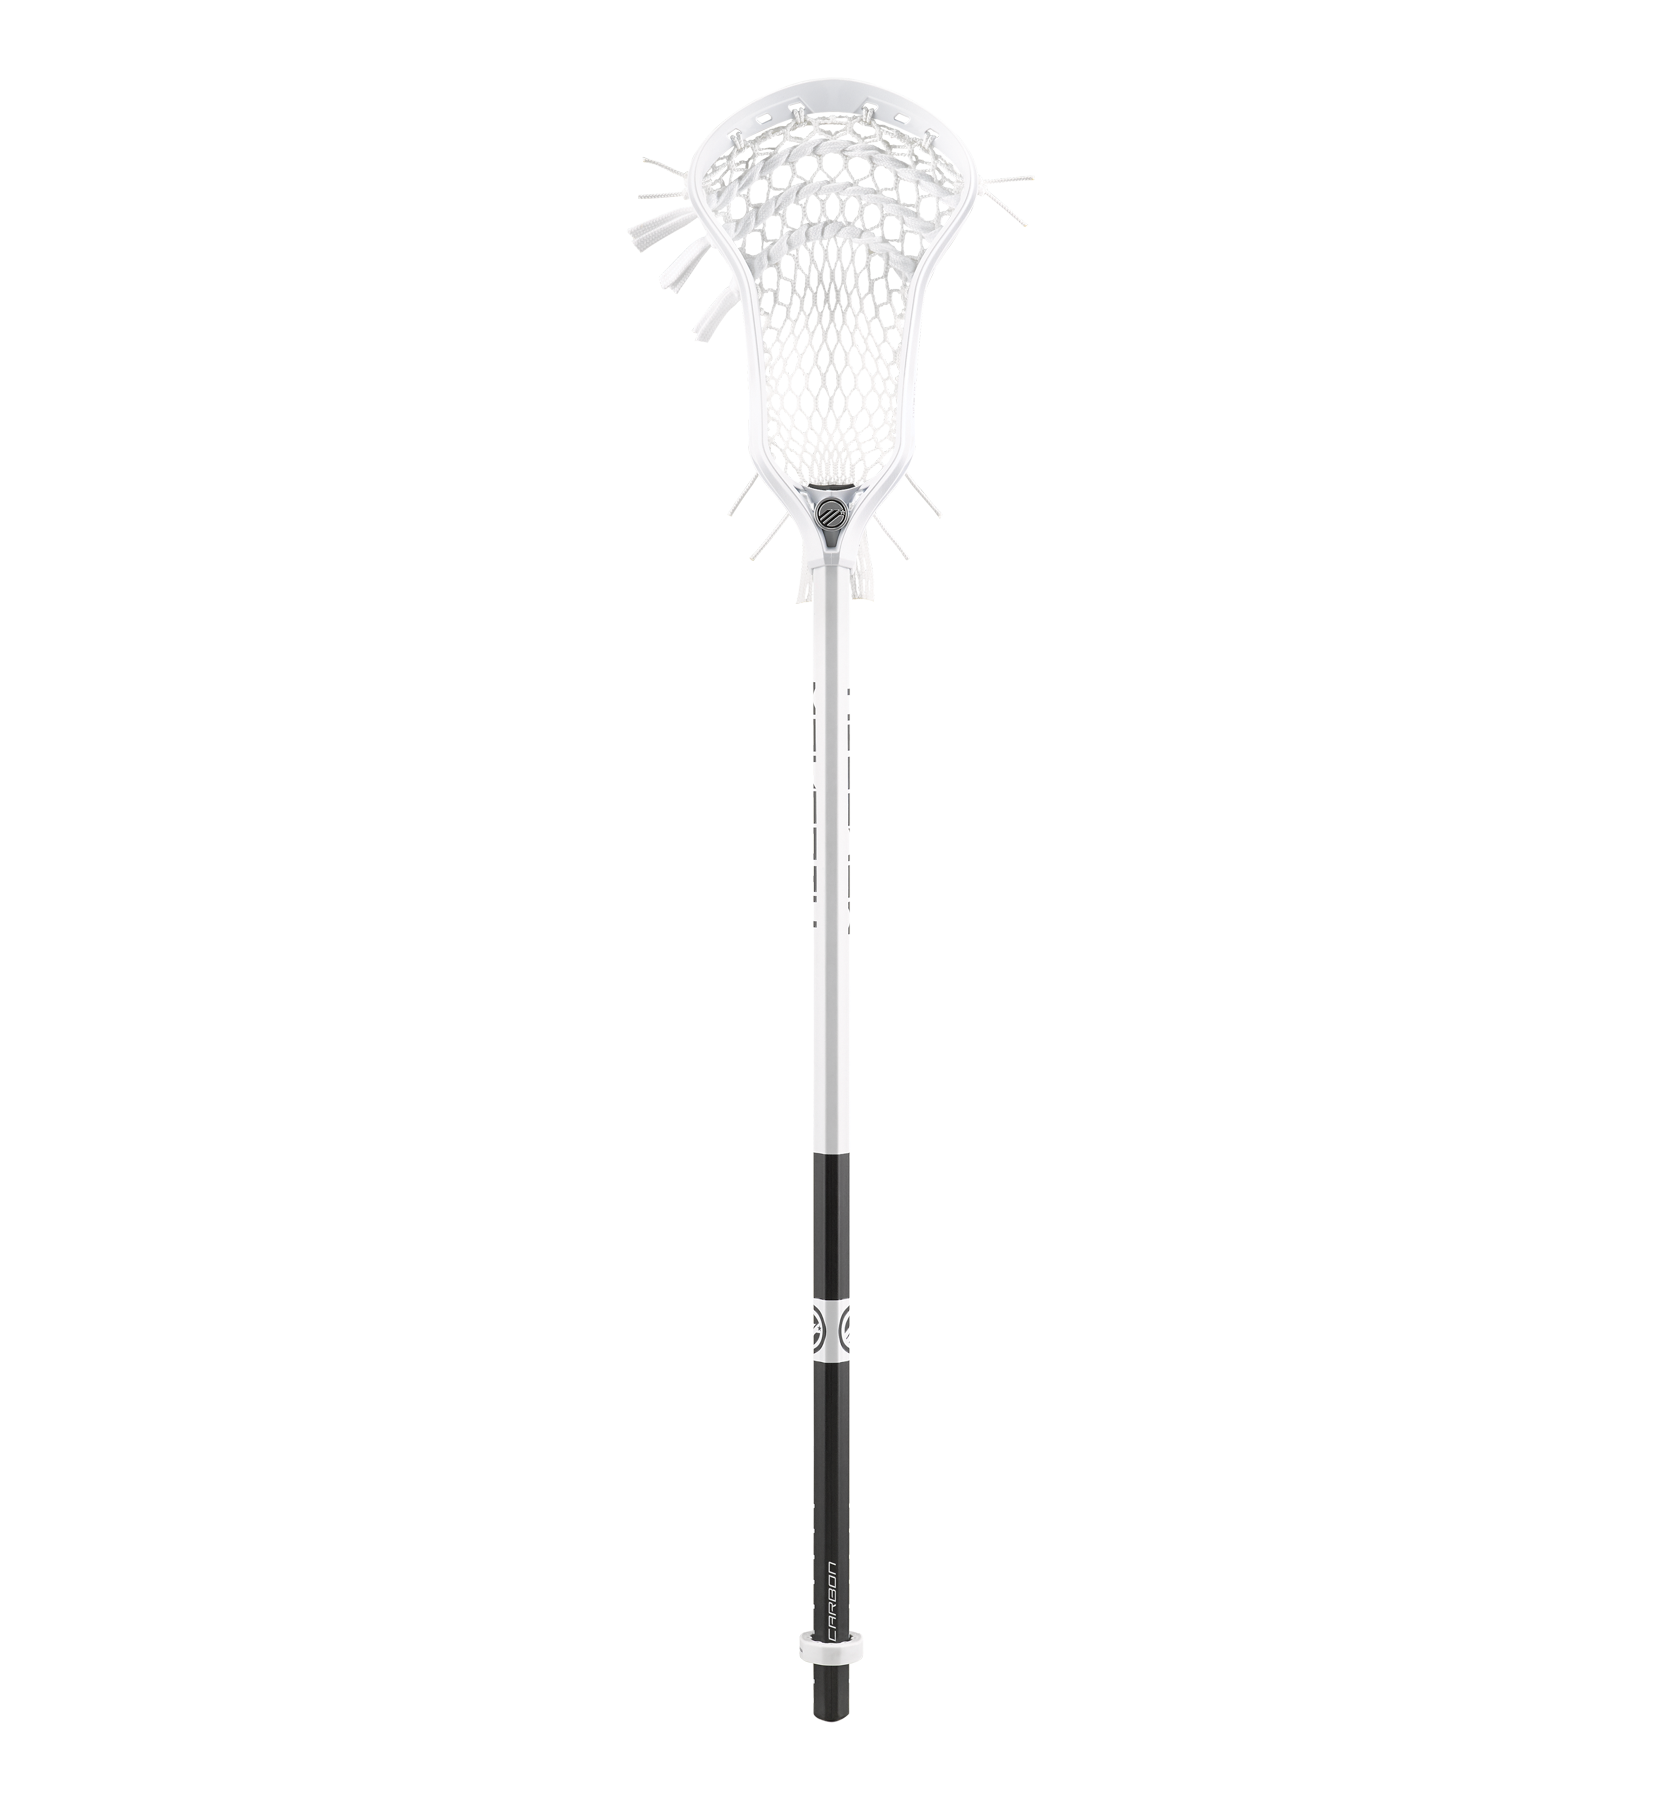 Maverik Ascent Pro HEX Pocket Composite Complete Women's Lacrosse Stick